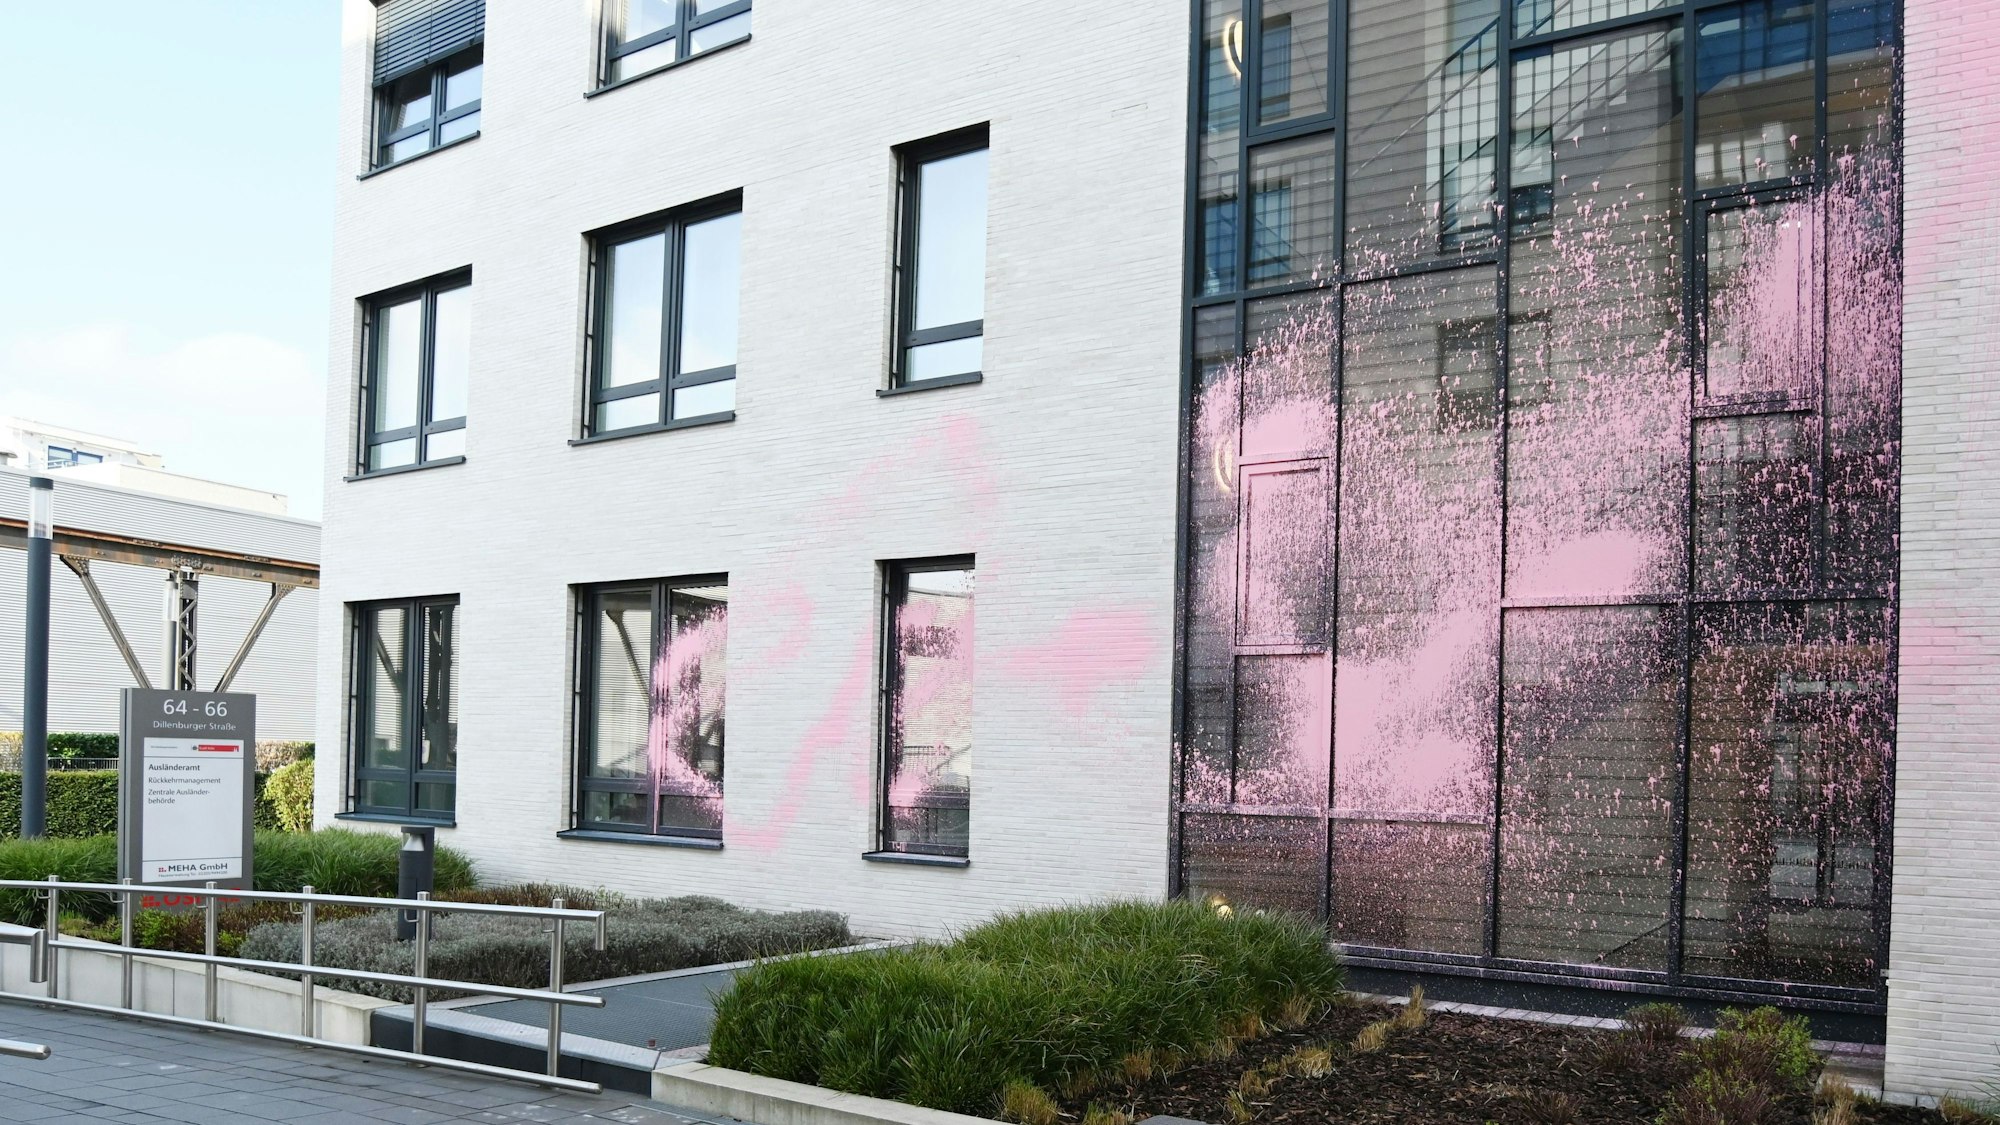 Das Ausländeramt auf der Dillenburgerstraße ist mit rosa Farbe beschmiert.